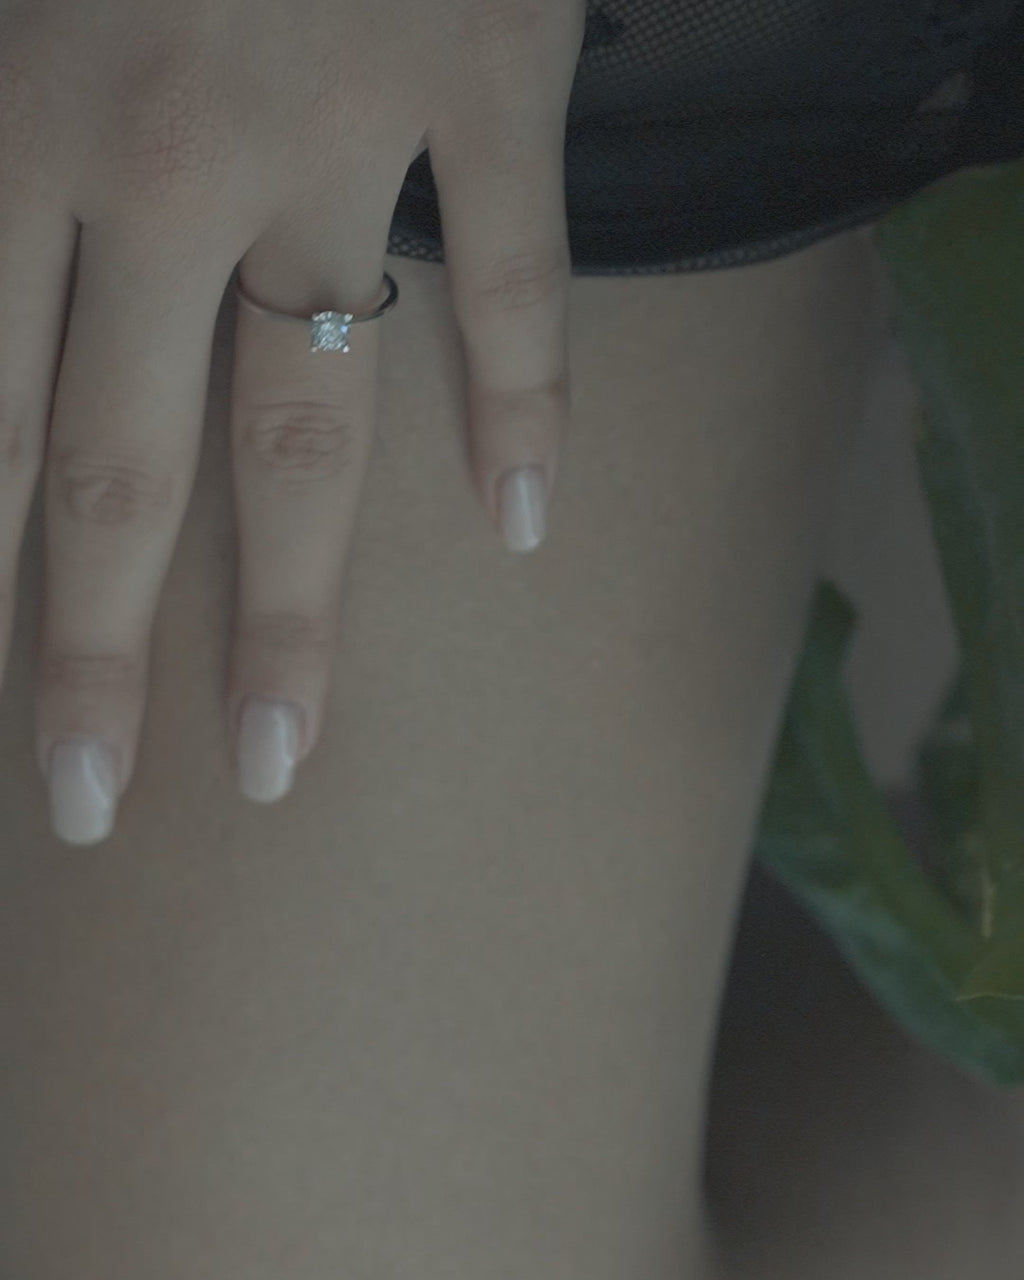 Μονόπετρο δαχτυλίδι γάμου με κεντρικό διαμάντι σε καστόνι σχήματος "V" κατασκευασμένο από λευκόχρυσο, φορεμένο σε γυναικείο χέρι.